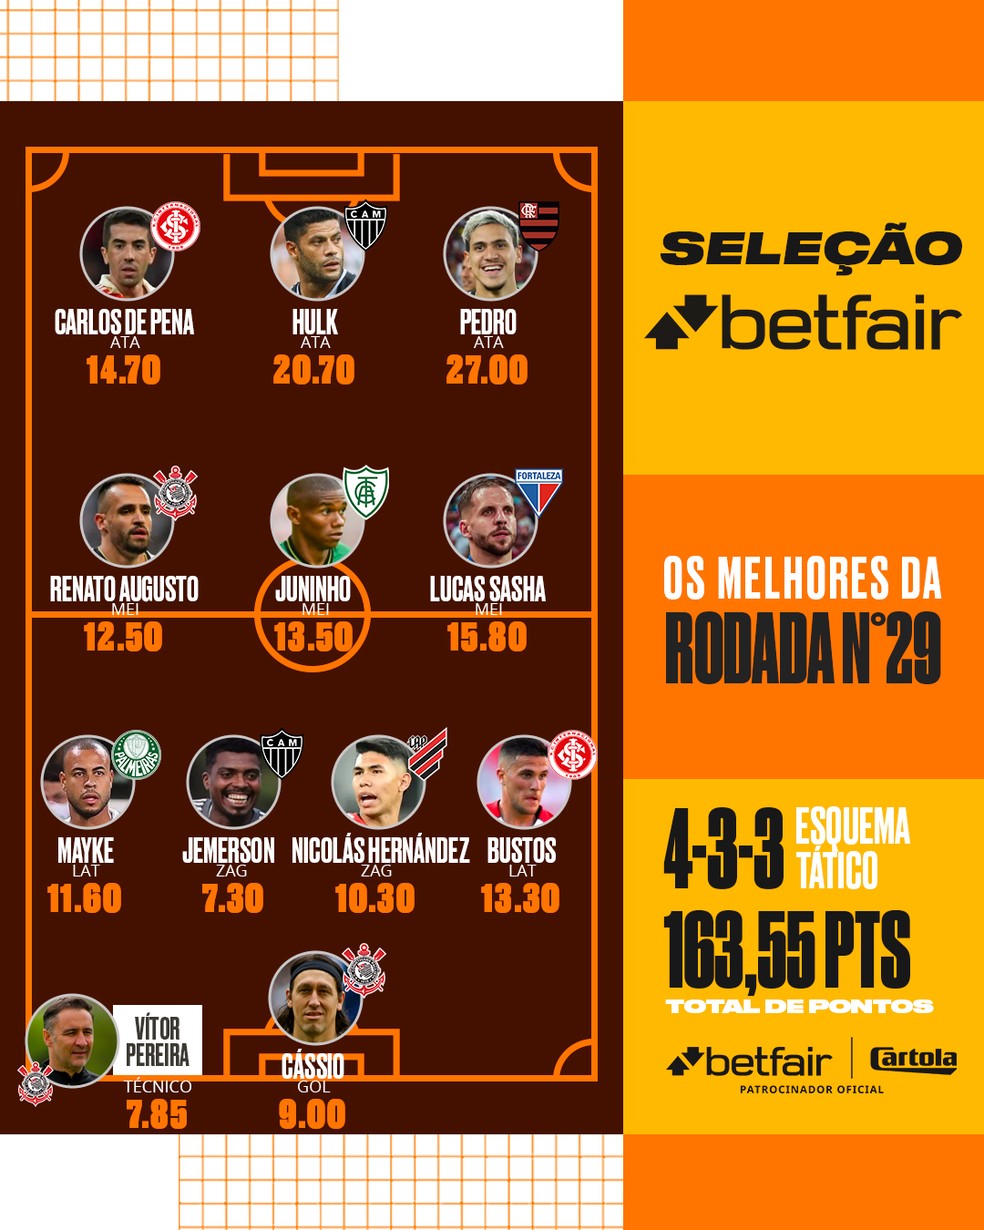 Cartola 2022: com brilho de Pedro, Seleção Betfair #29 fica distribuída em  8 times com trio do Corinthians, seleção da rodada